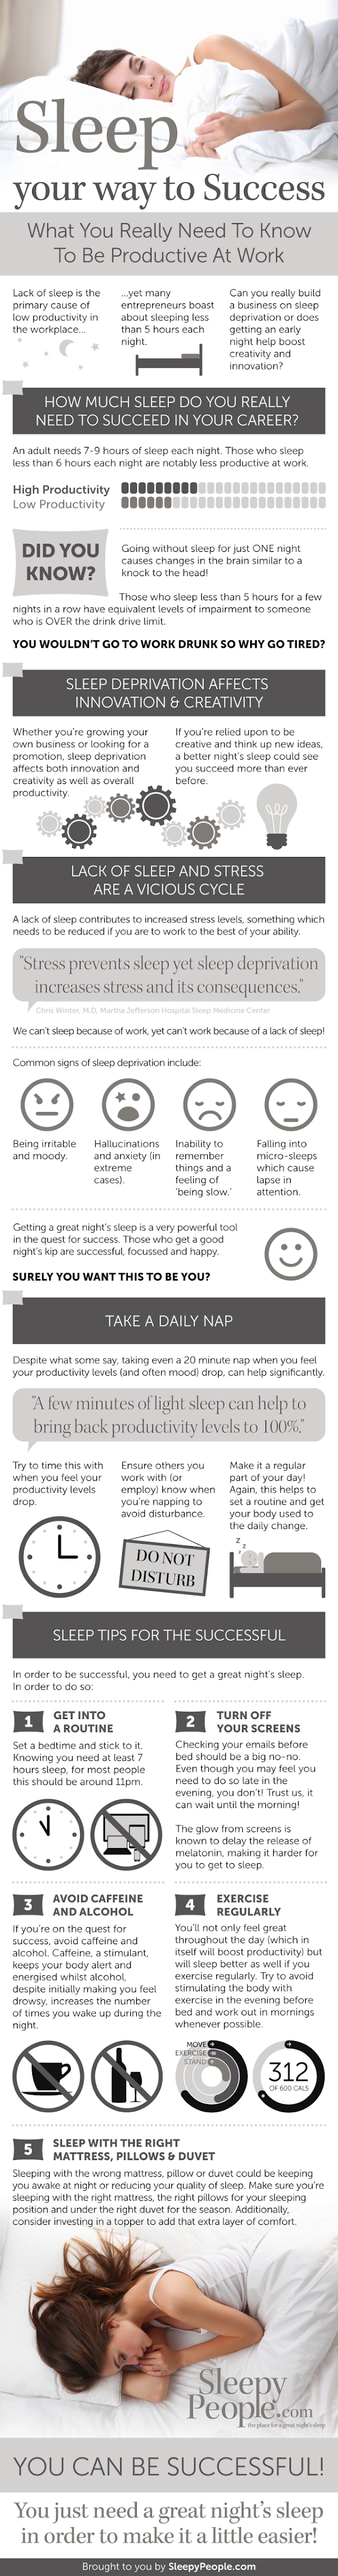 https://www.sleepypeople.com/wordpress/wp-content/uploads/2015/07/Sleep-Your-Way-To-Success.png